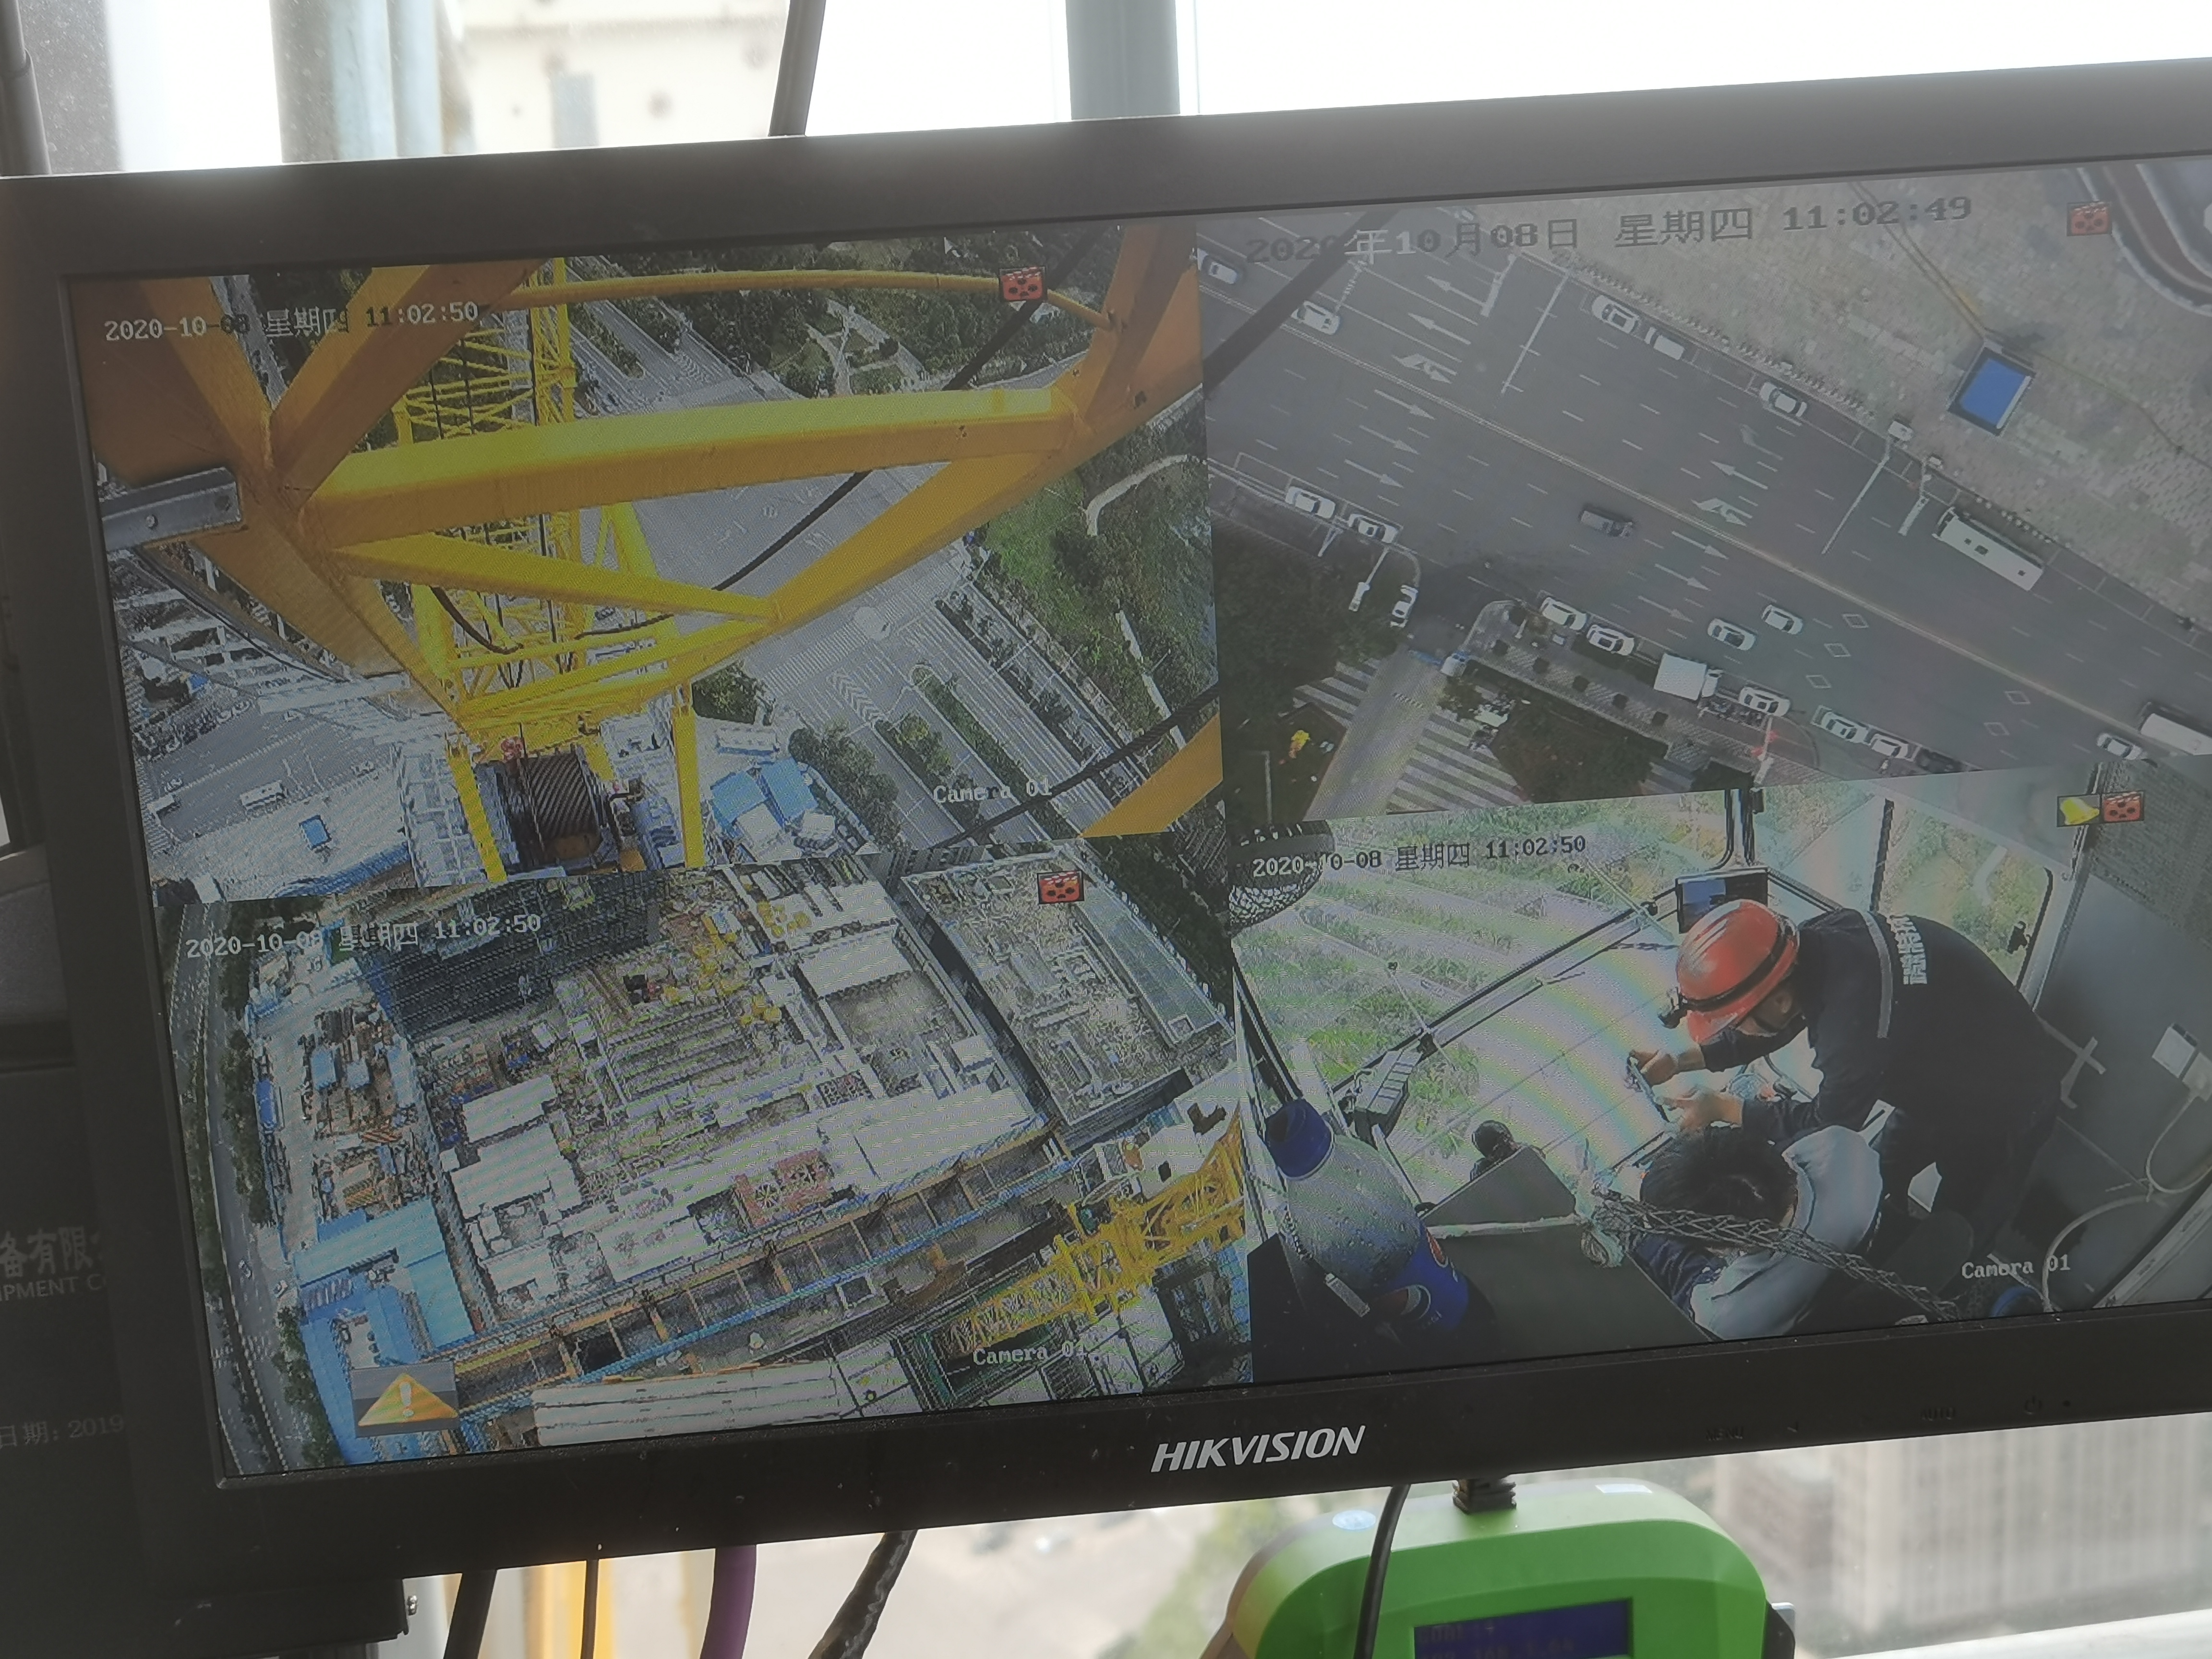 透过驾驶室的视频监控看到微特的工程师正在作业